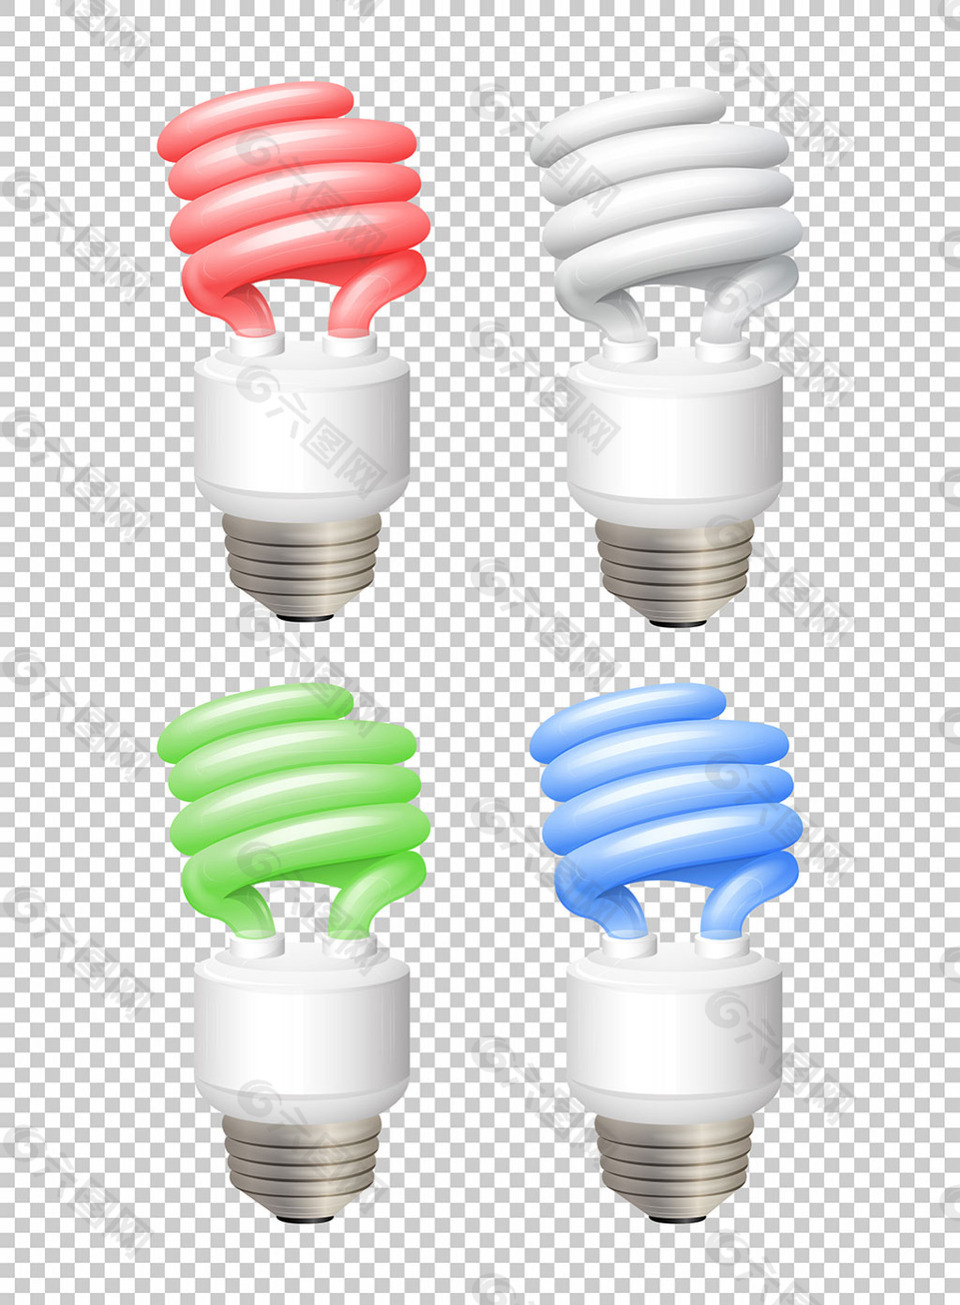 不同颜色的灯泡节能灯透明背景图